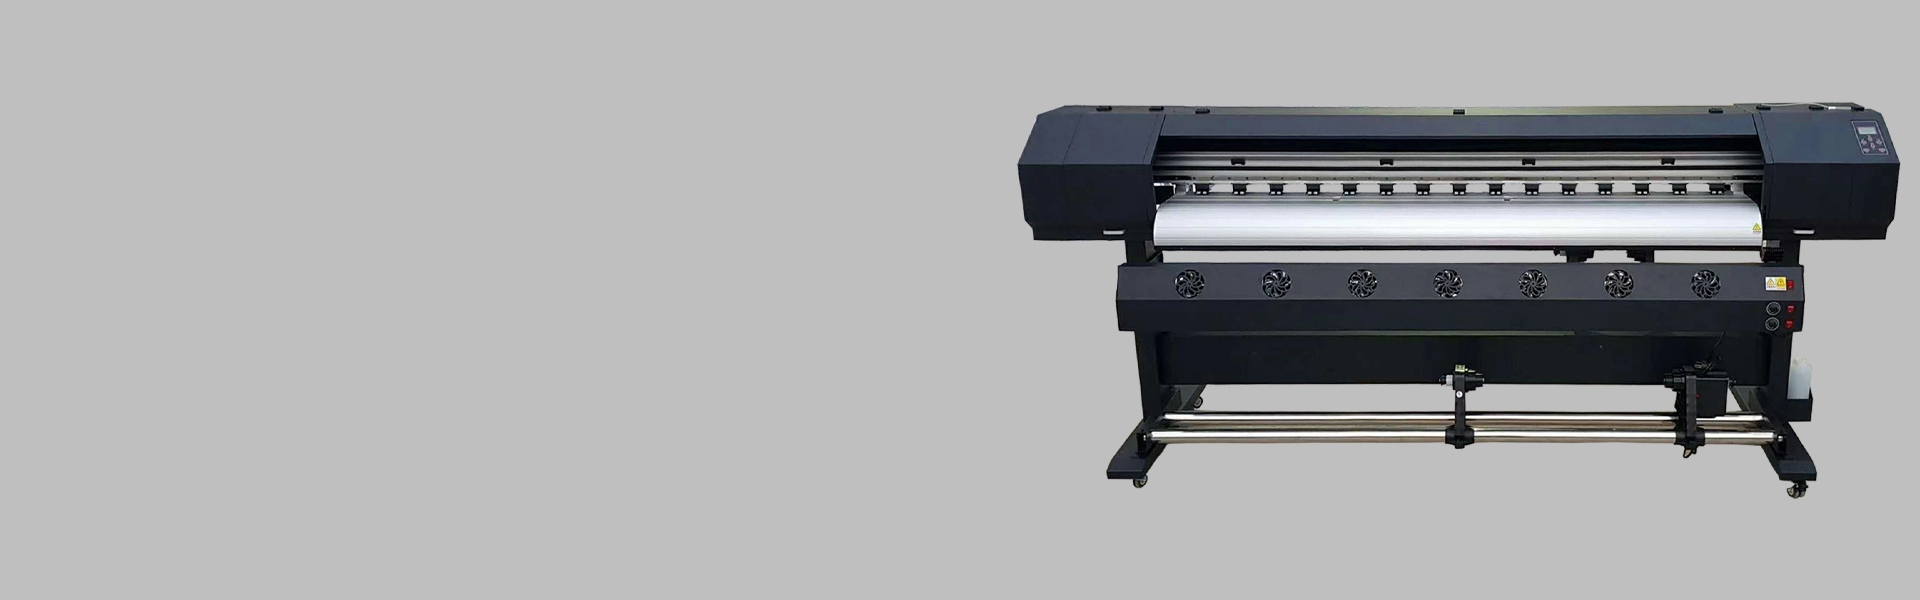 Impressora de sublimação de 1,8 m com cabeça única